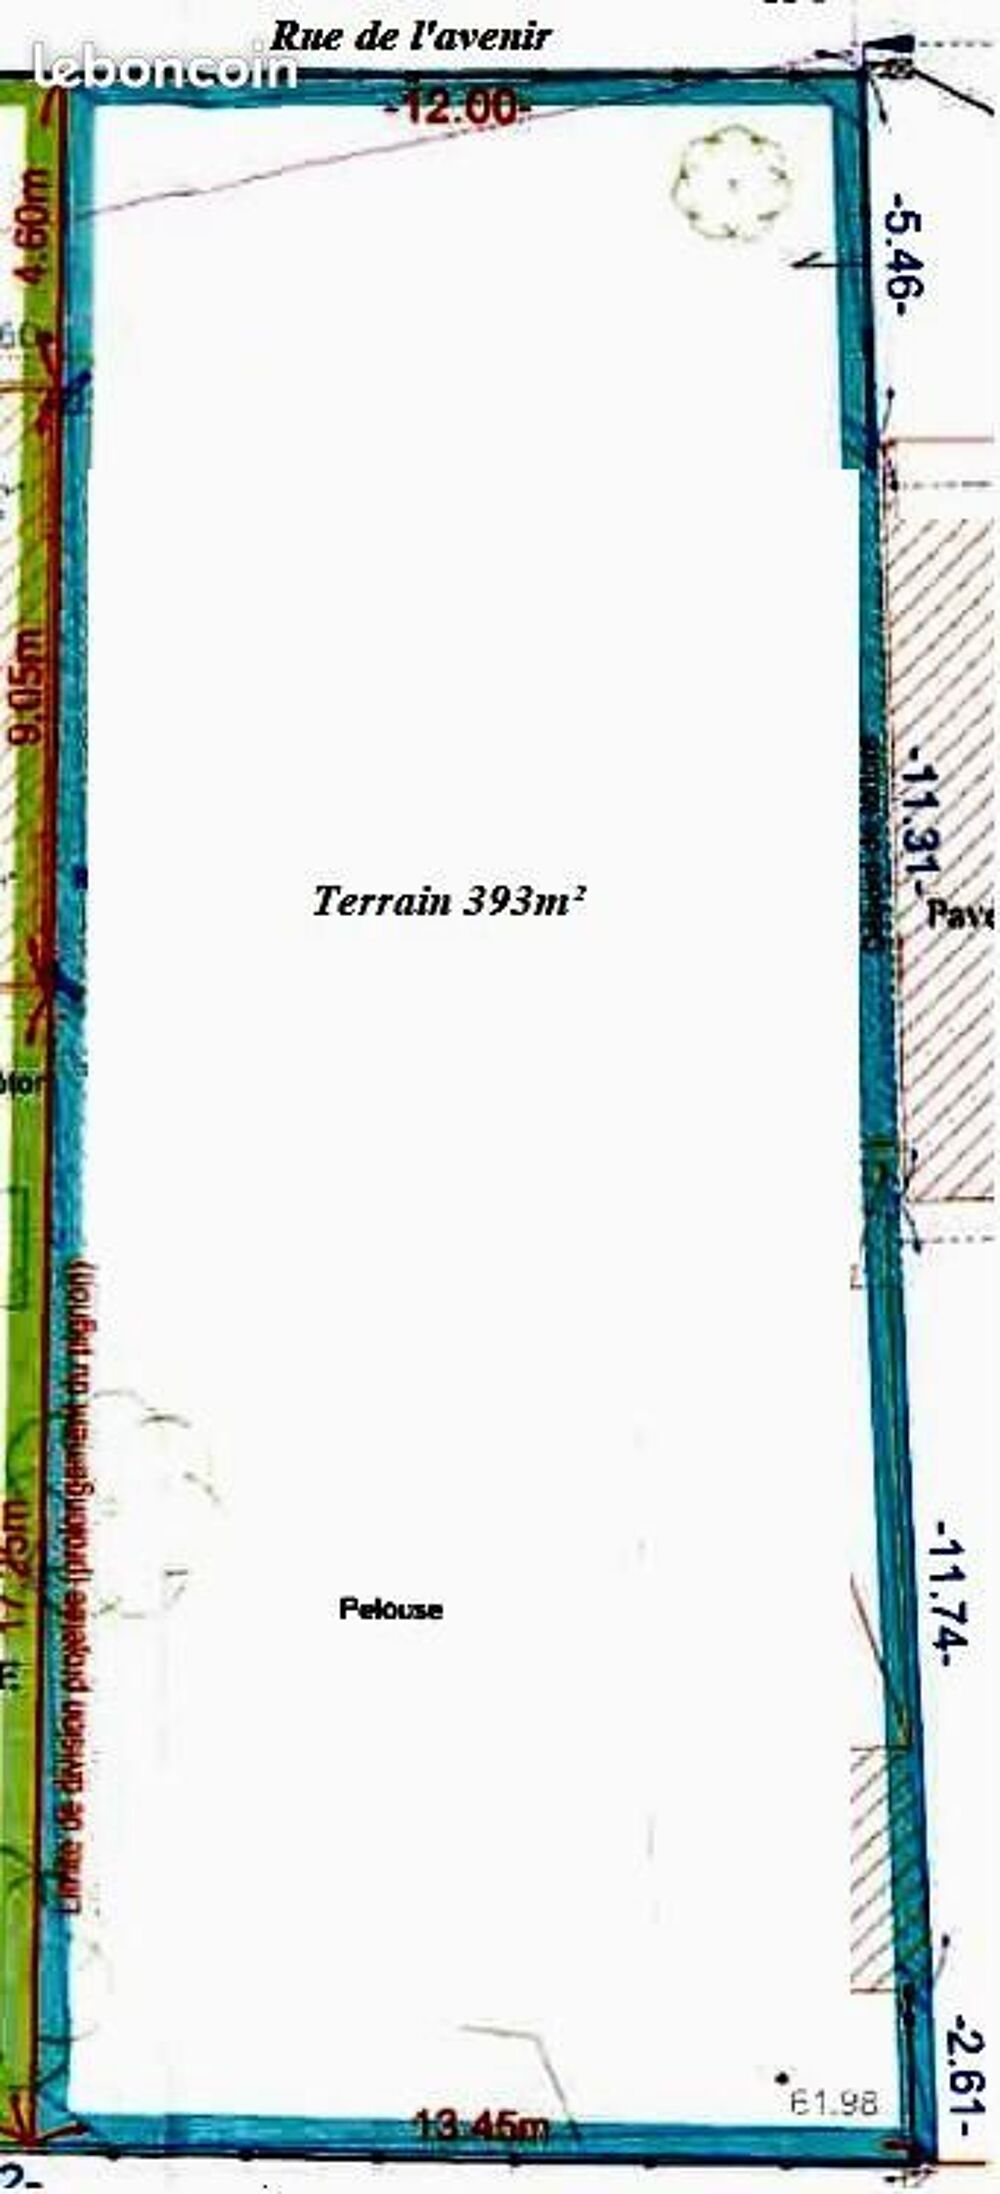 Vente Terrain UNIQUE TERRAIN 400M LES HAUTS DE BONNEUIL Bonneuil-sur-marne